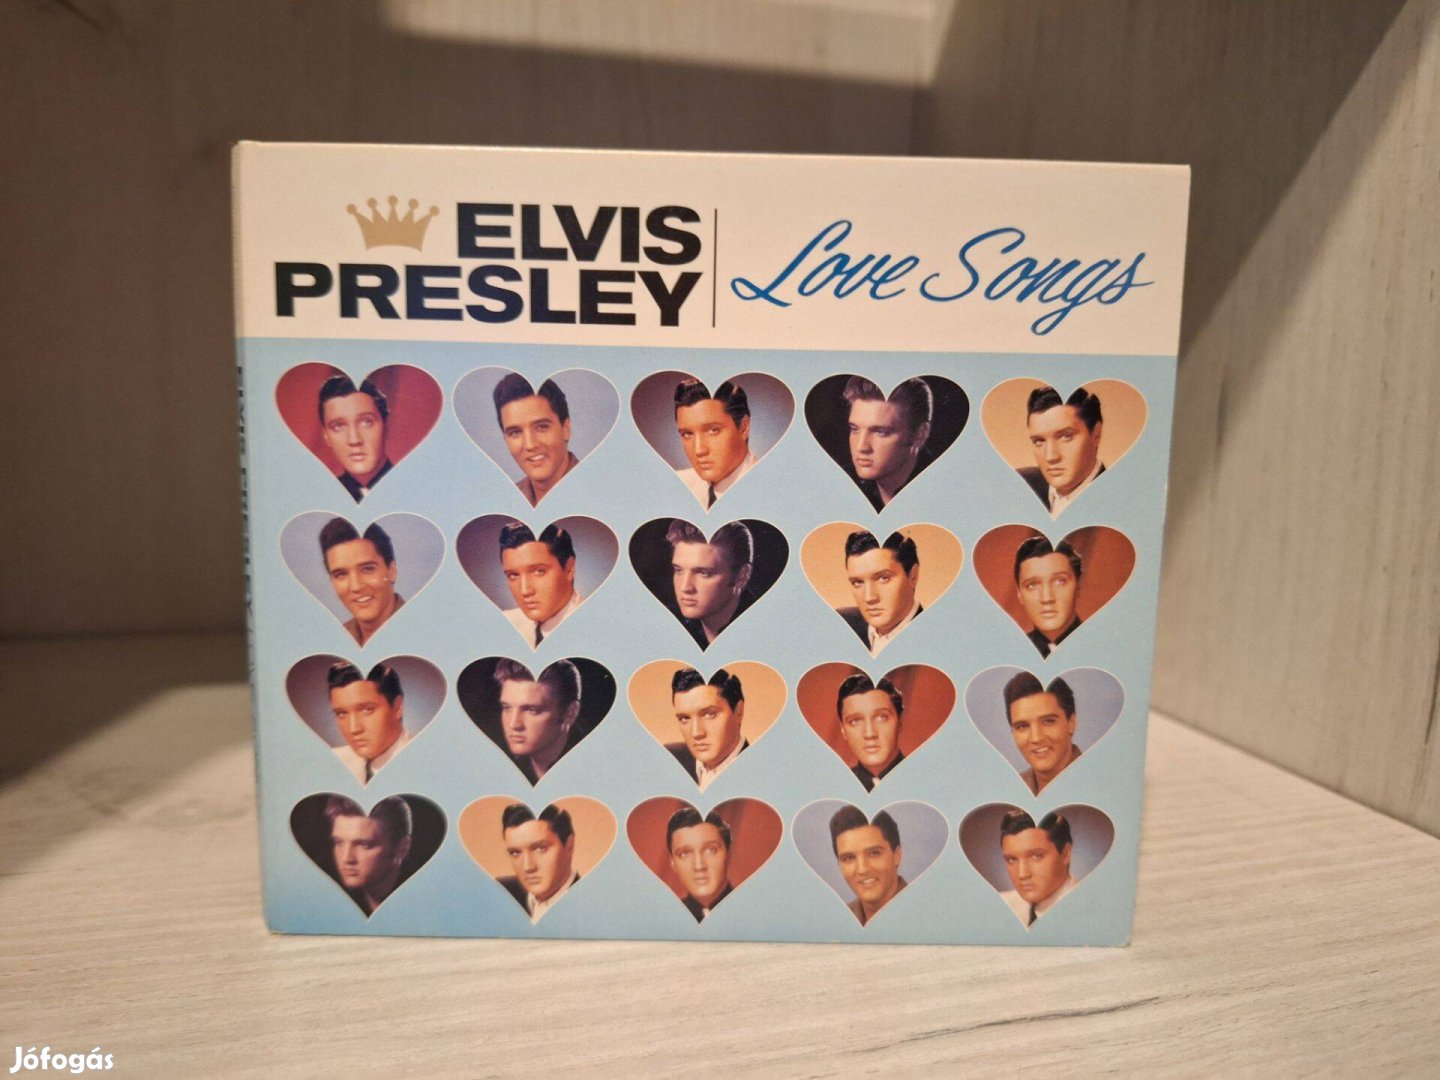 Elvis Presley - Love Songs CD